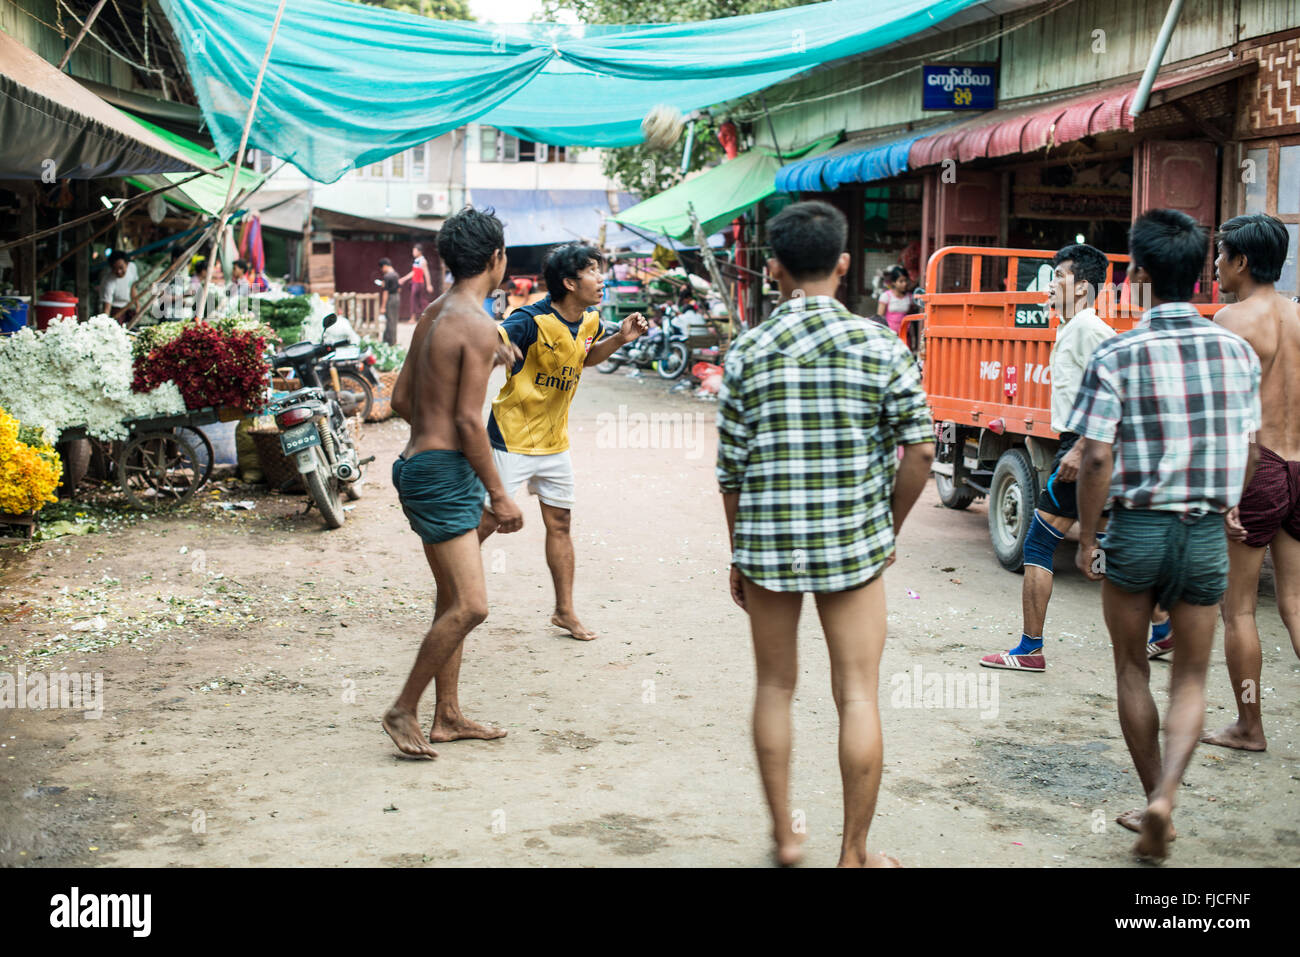 MANDALAY, Myanmar – Eine Gruppe birmanischer Männer spielt auf einer belebten Straße in Mandalay, Myanmar, ein lebhaftes Spiel von Chinlone, auch bekannt als Caneball. Dieser traditionelle Sport, der für Myanmars kulturelle Identität von zentraler Bedeutung ist, erfordert Geschicklichkeit und Teamarbeit – Eigenschaften, die den Gemeinschaftsgeist fördern. Stockfoto